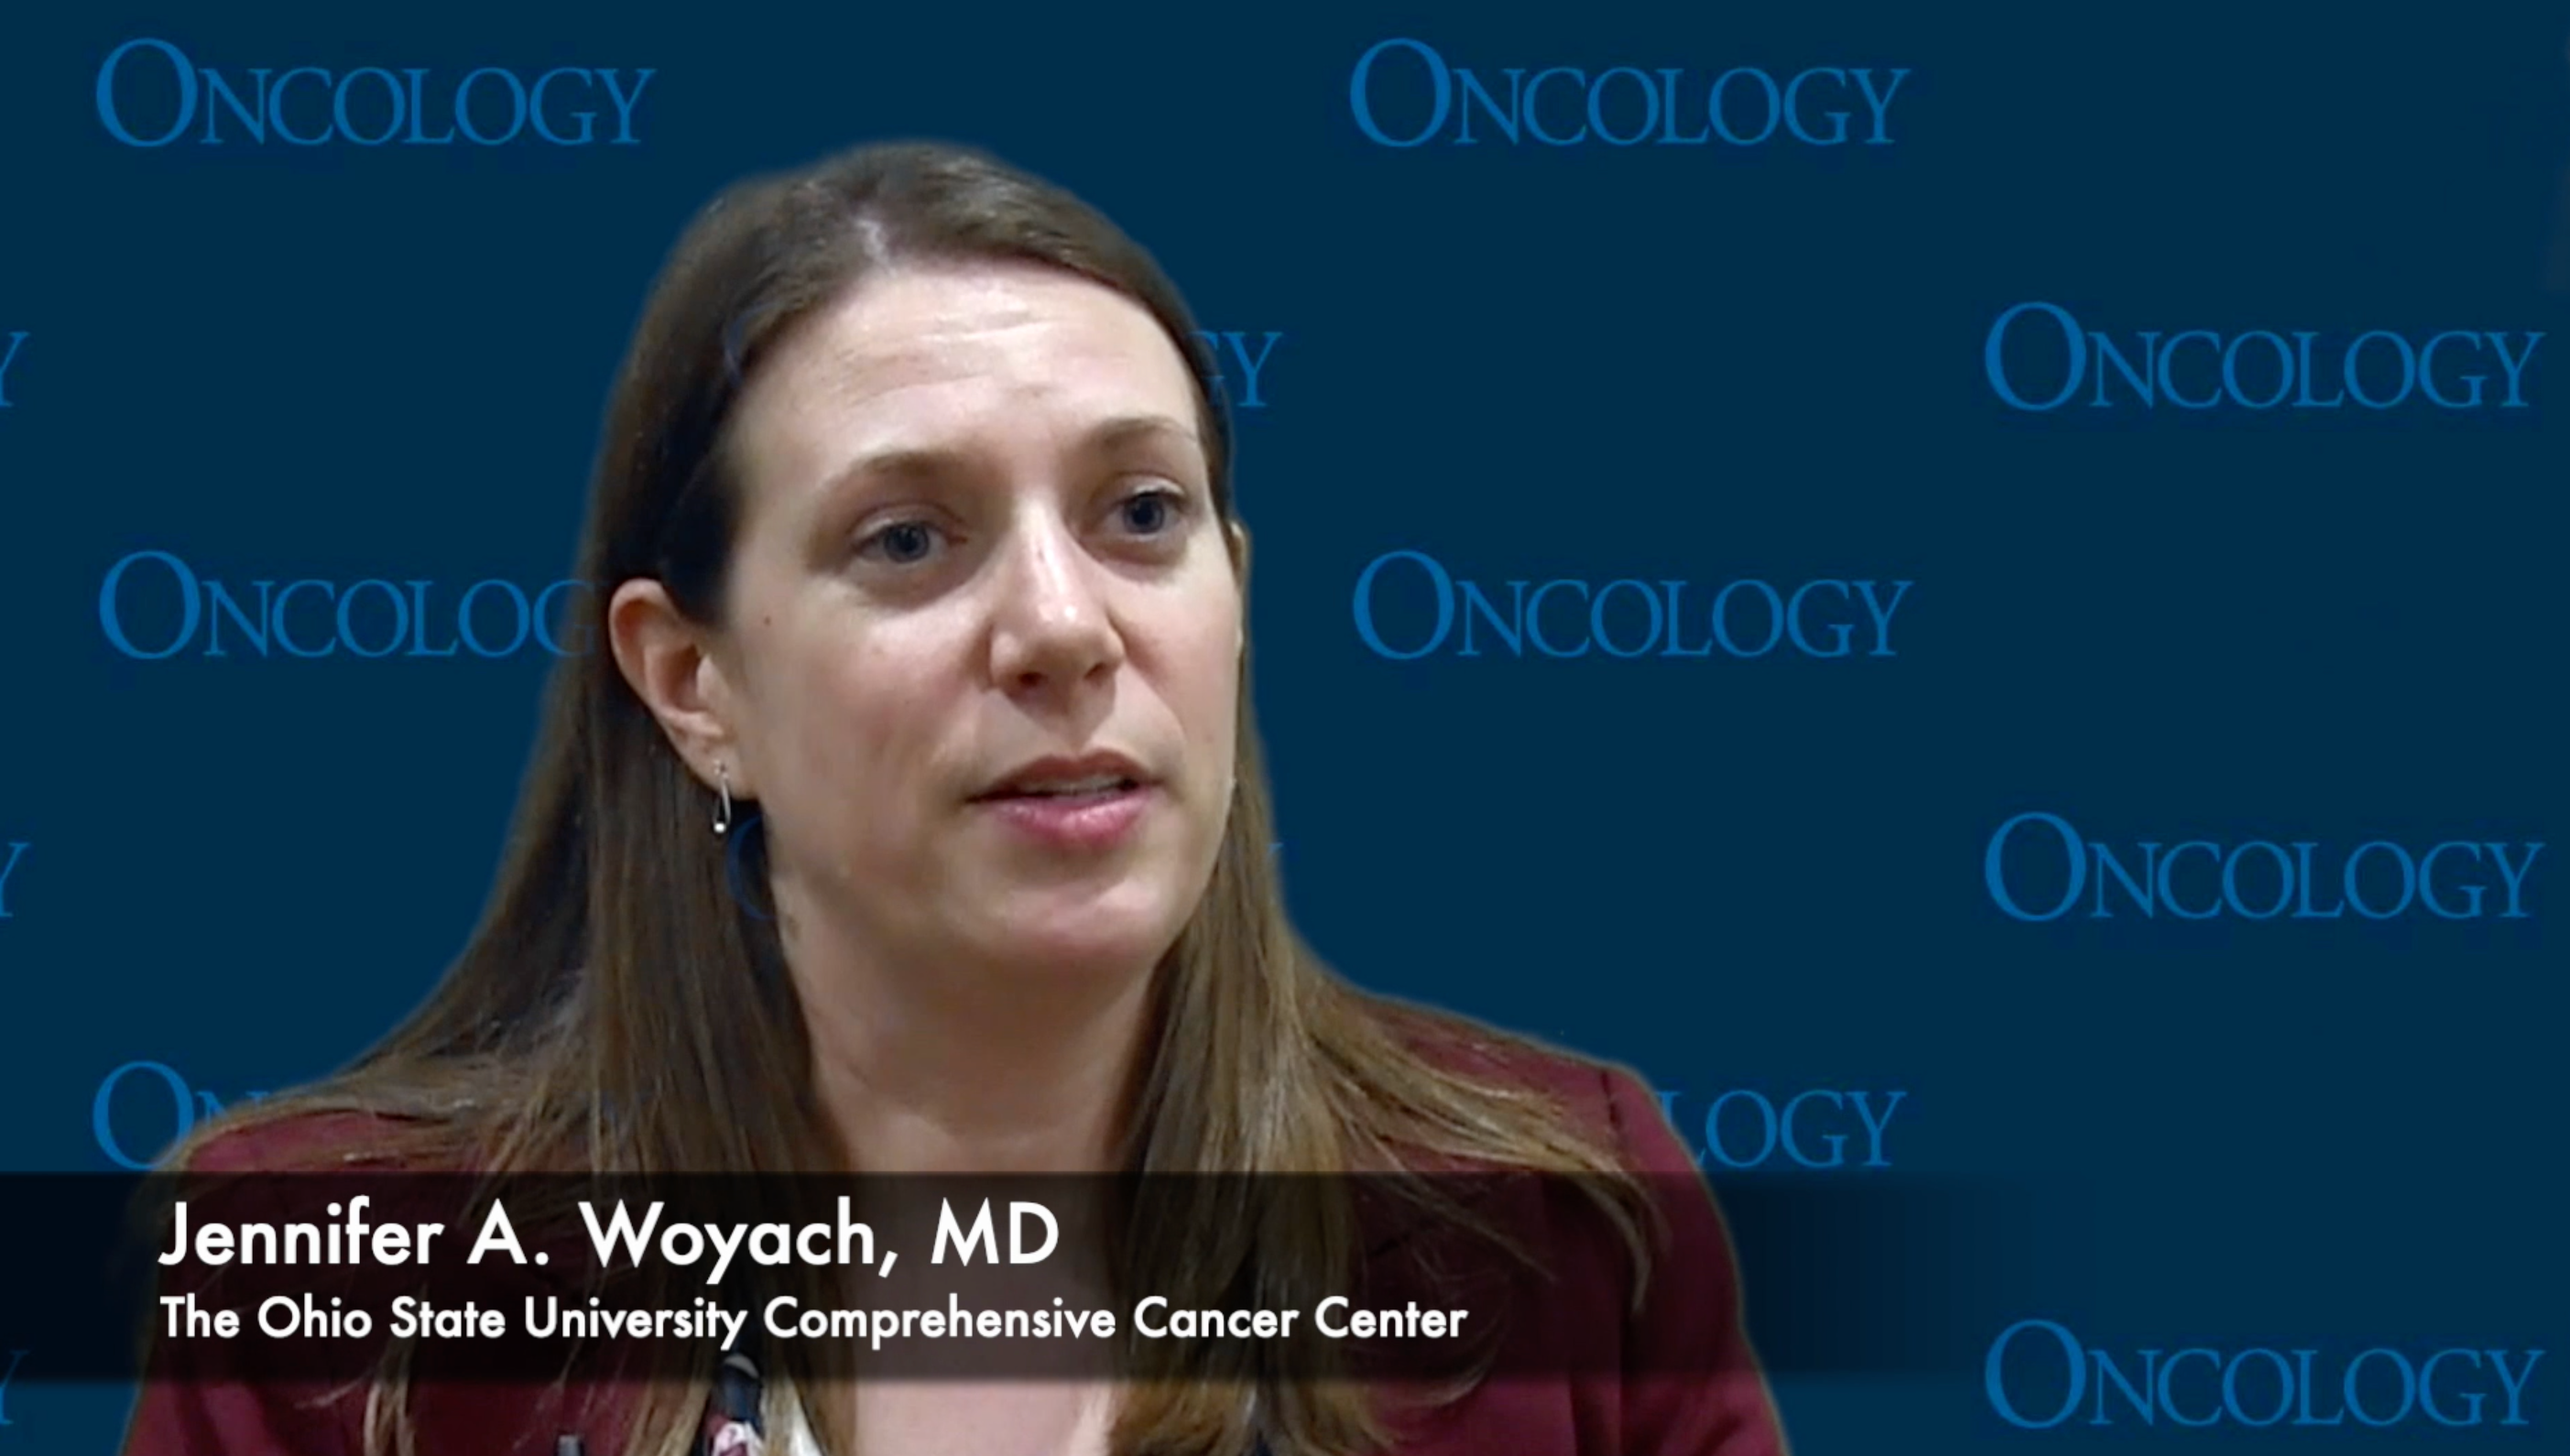 Jennifer A. Woyach, MD, on the Alliance A041702 Trial in Chronic Lymphocytic Leukemia